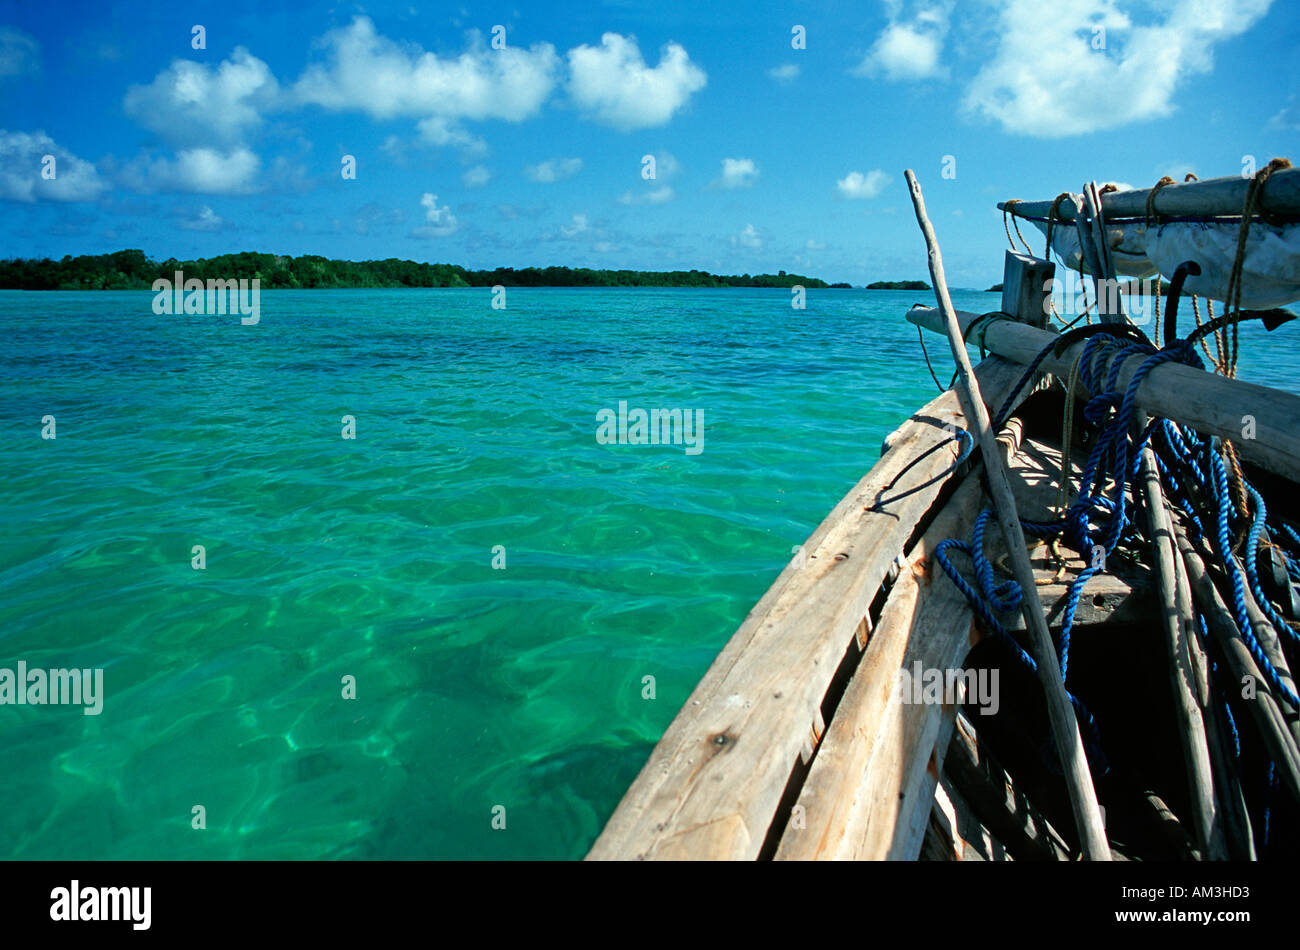 Emerald de l'eau d'un bateau au large de la côte de l'île de Joani Joani abrite le port de commerce arabe abandonné de Kua Mafia Tanzanie Banque D'Images